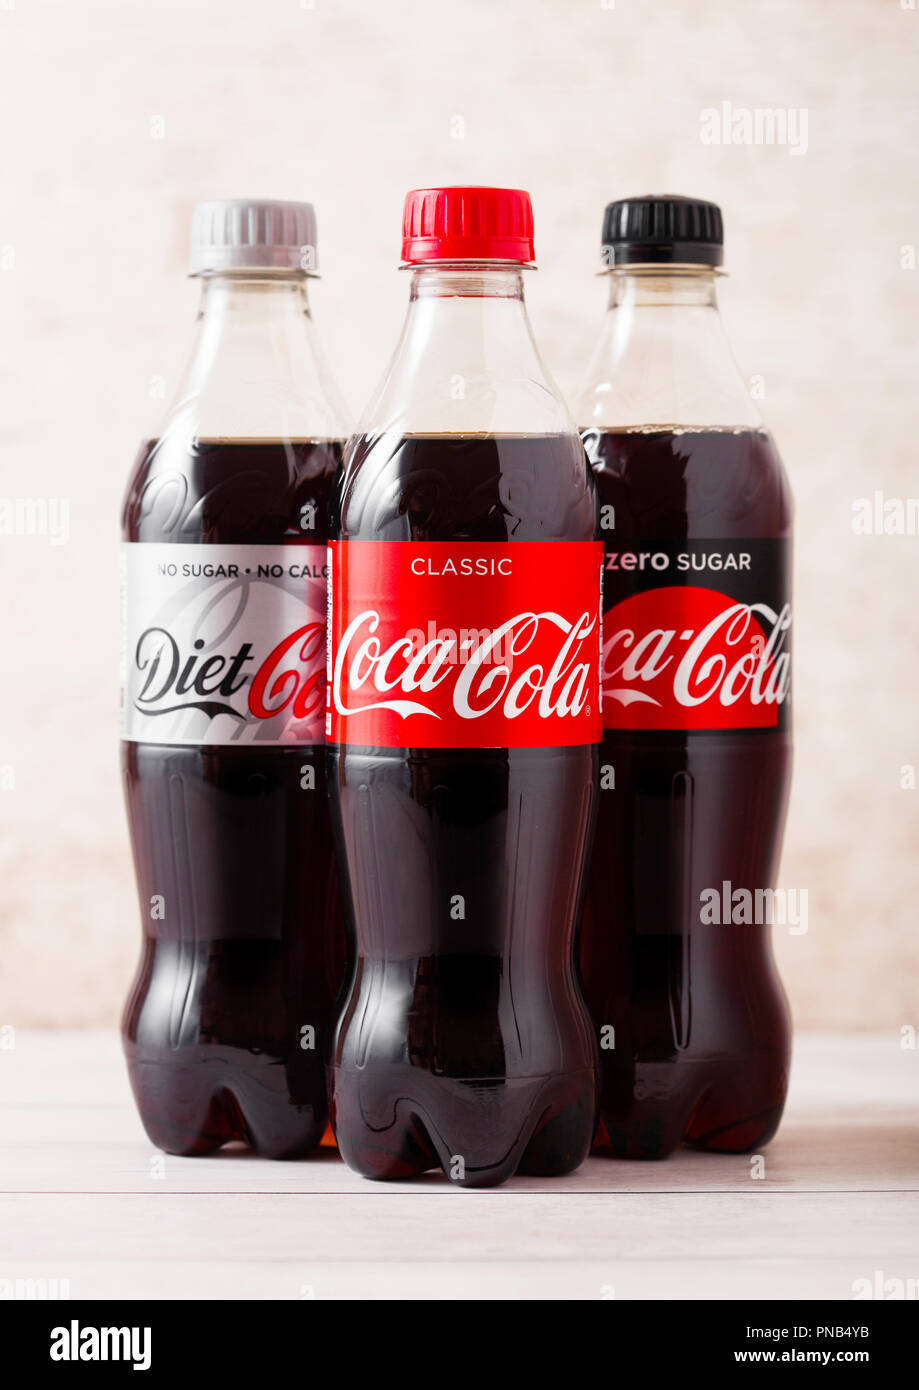 LONDON, UK - August 03, 2018: Kunststoffflaschen der ursprünglichen Ernährung und Zero Coca Cola Erfrischungsgetränke auf Holz. Beliebteste Getränk in der Welt. Stockfoto